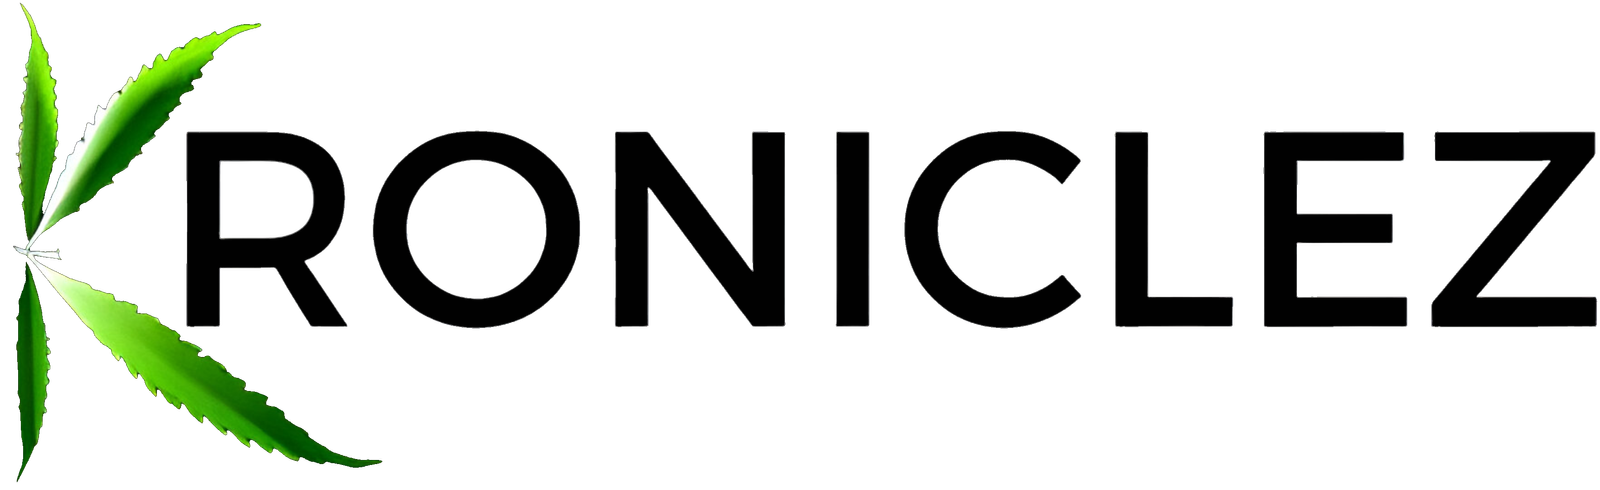 Kroniclez-black-logo